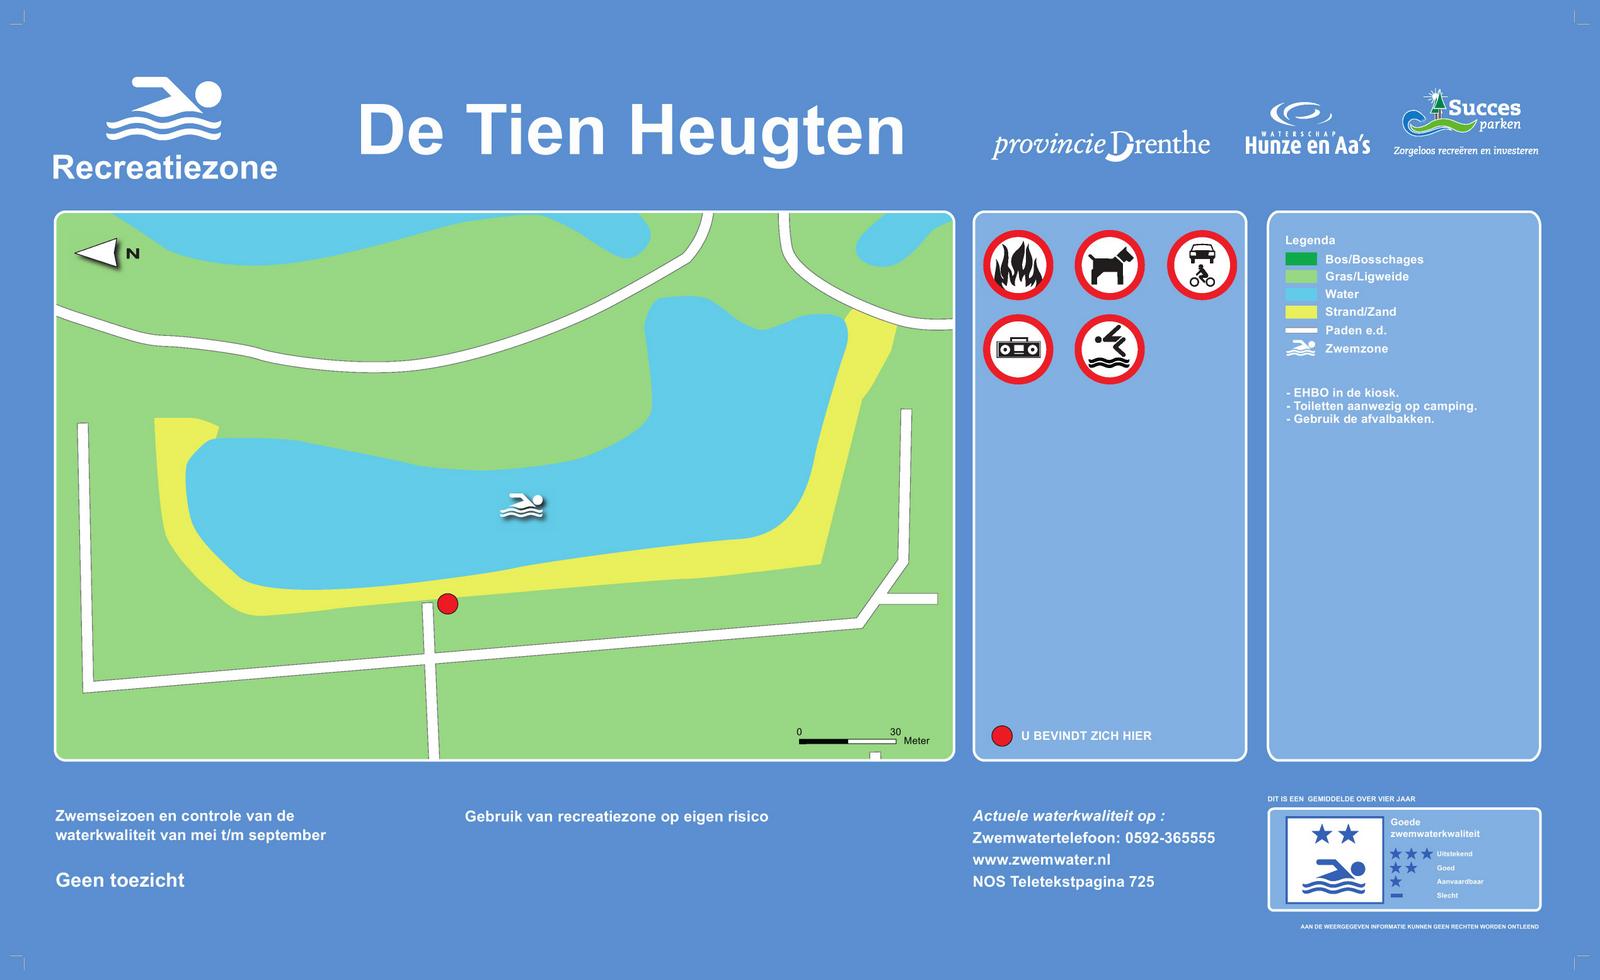 The information board at the swimming location De Tien Heugten, Schoonloo